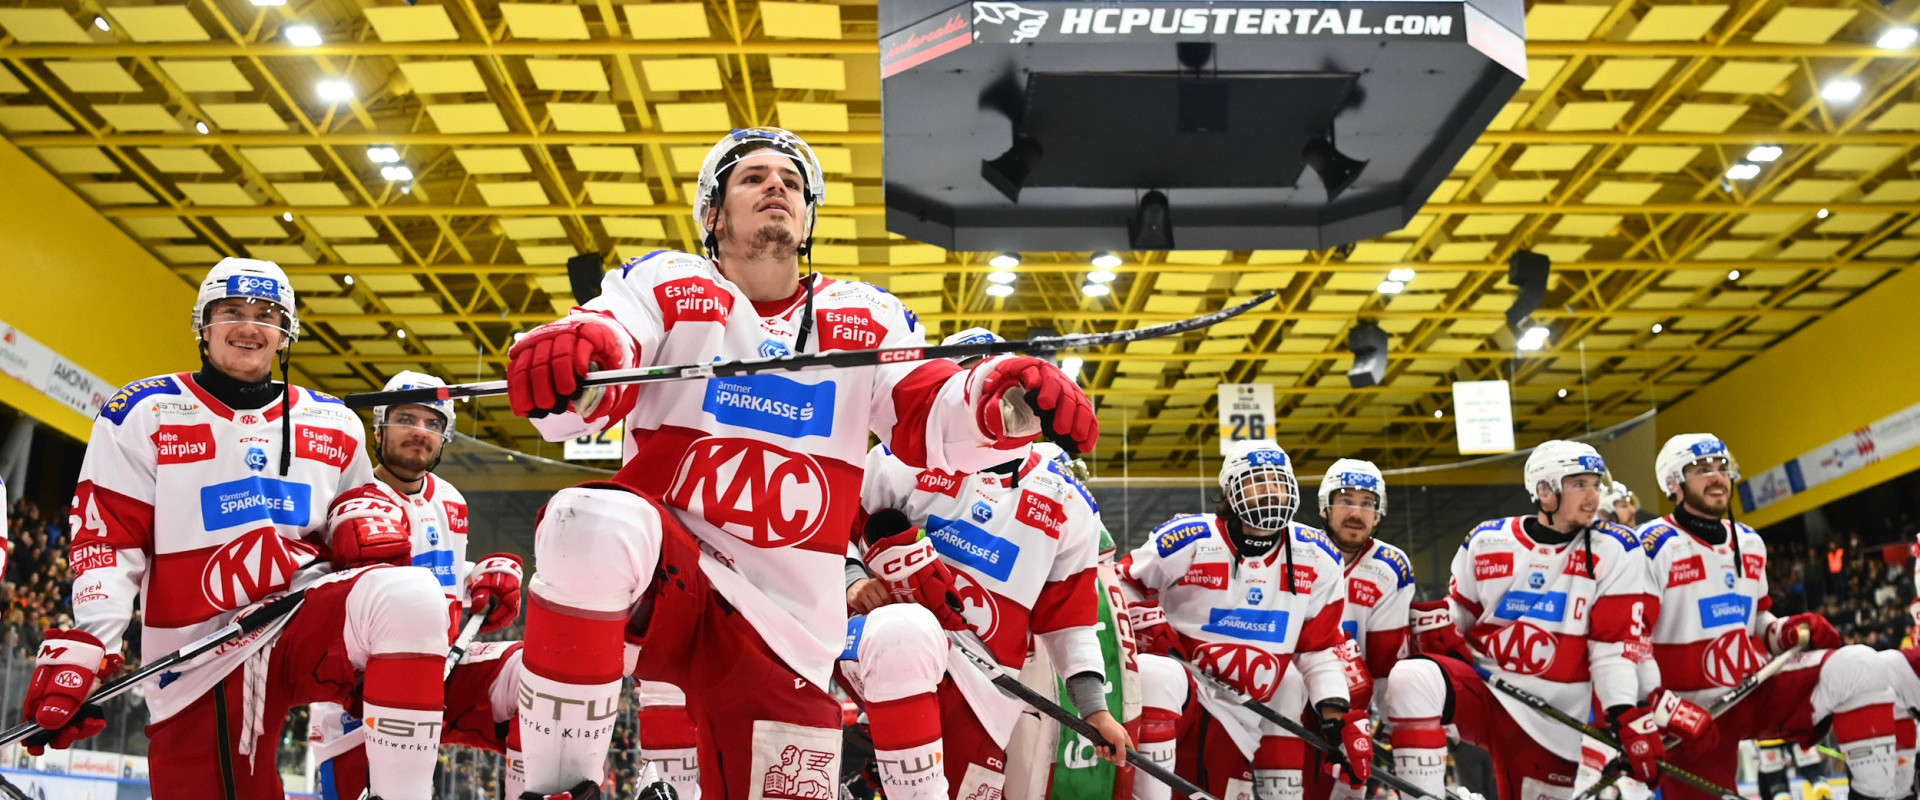 Die Rotjacken stürmten am Dienstagabend mit einem neuerlichen Auswärtssieg in Brunico/Bruneck in das Finale der win2day ICE Hockey League